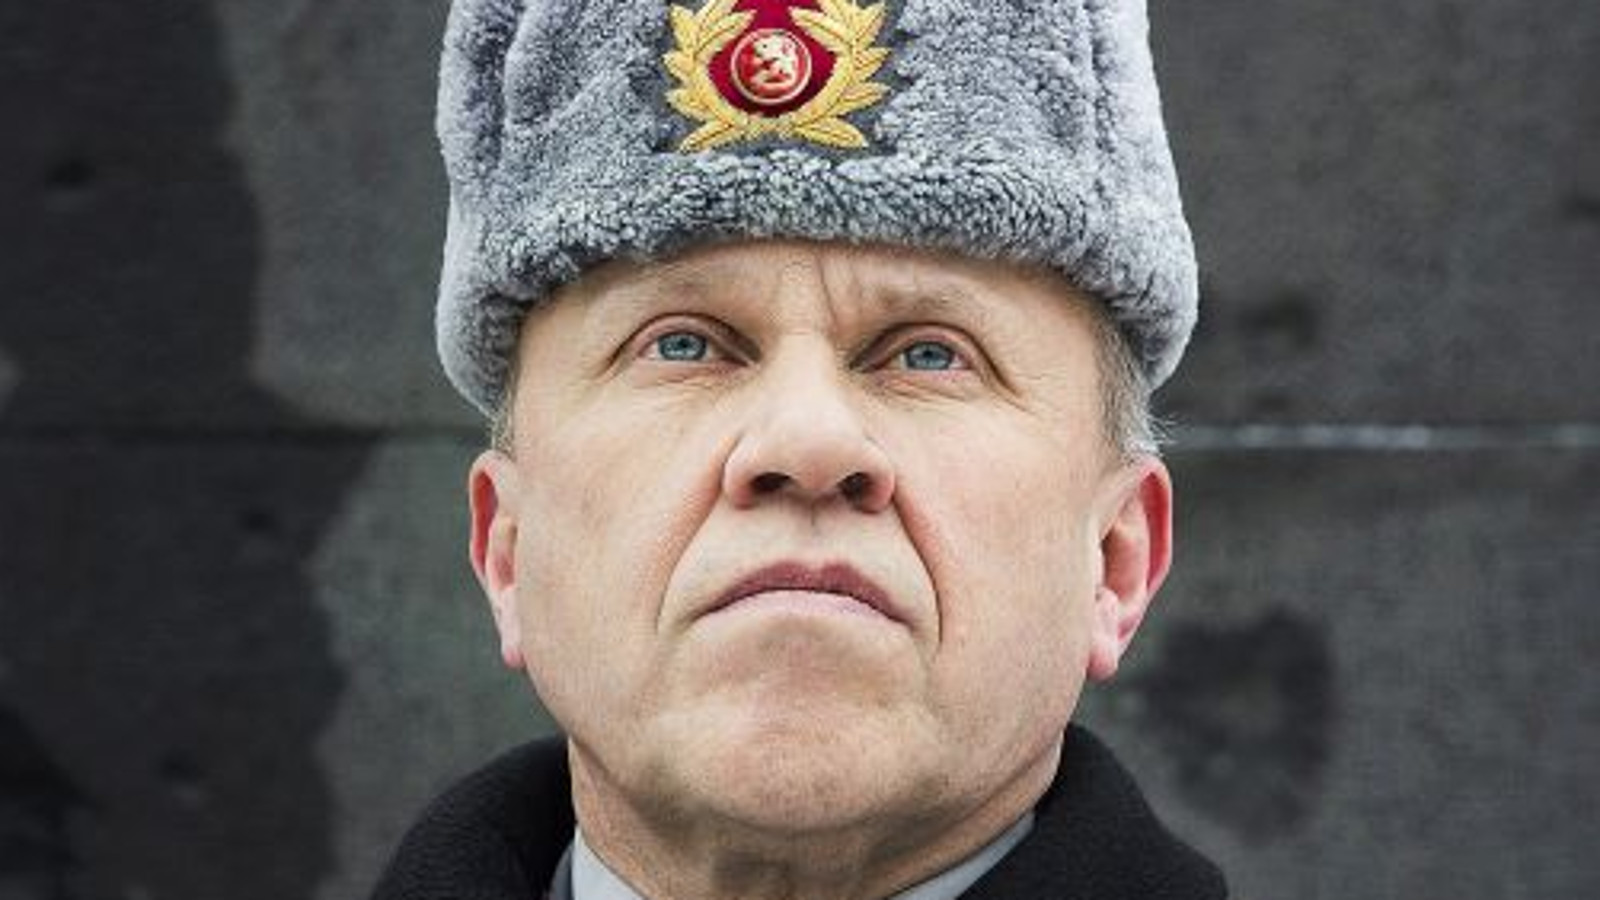 Kuvassa on Martti J. Kari kasvokuvassa ja hänellä on Suomen armeijan karvahattu, jossa on Suomen leijonan kokardi hatussa. Hattu on harmaa. Tausta on tumman harmaa.